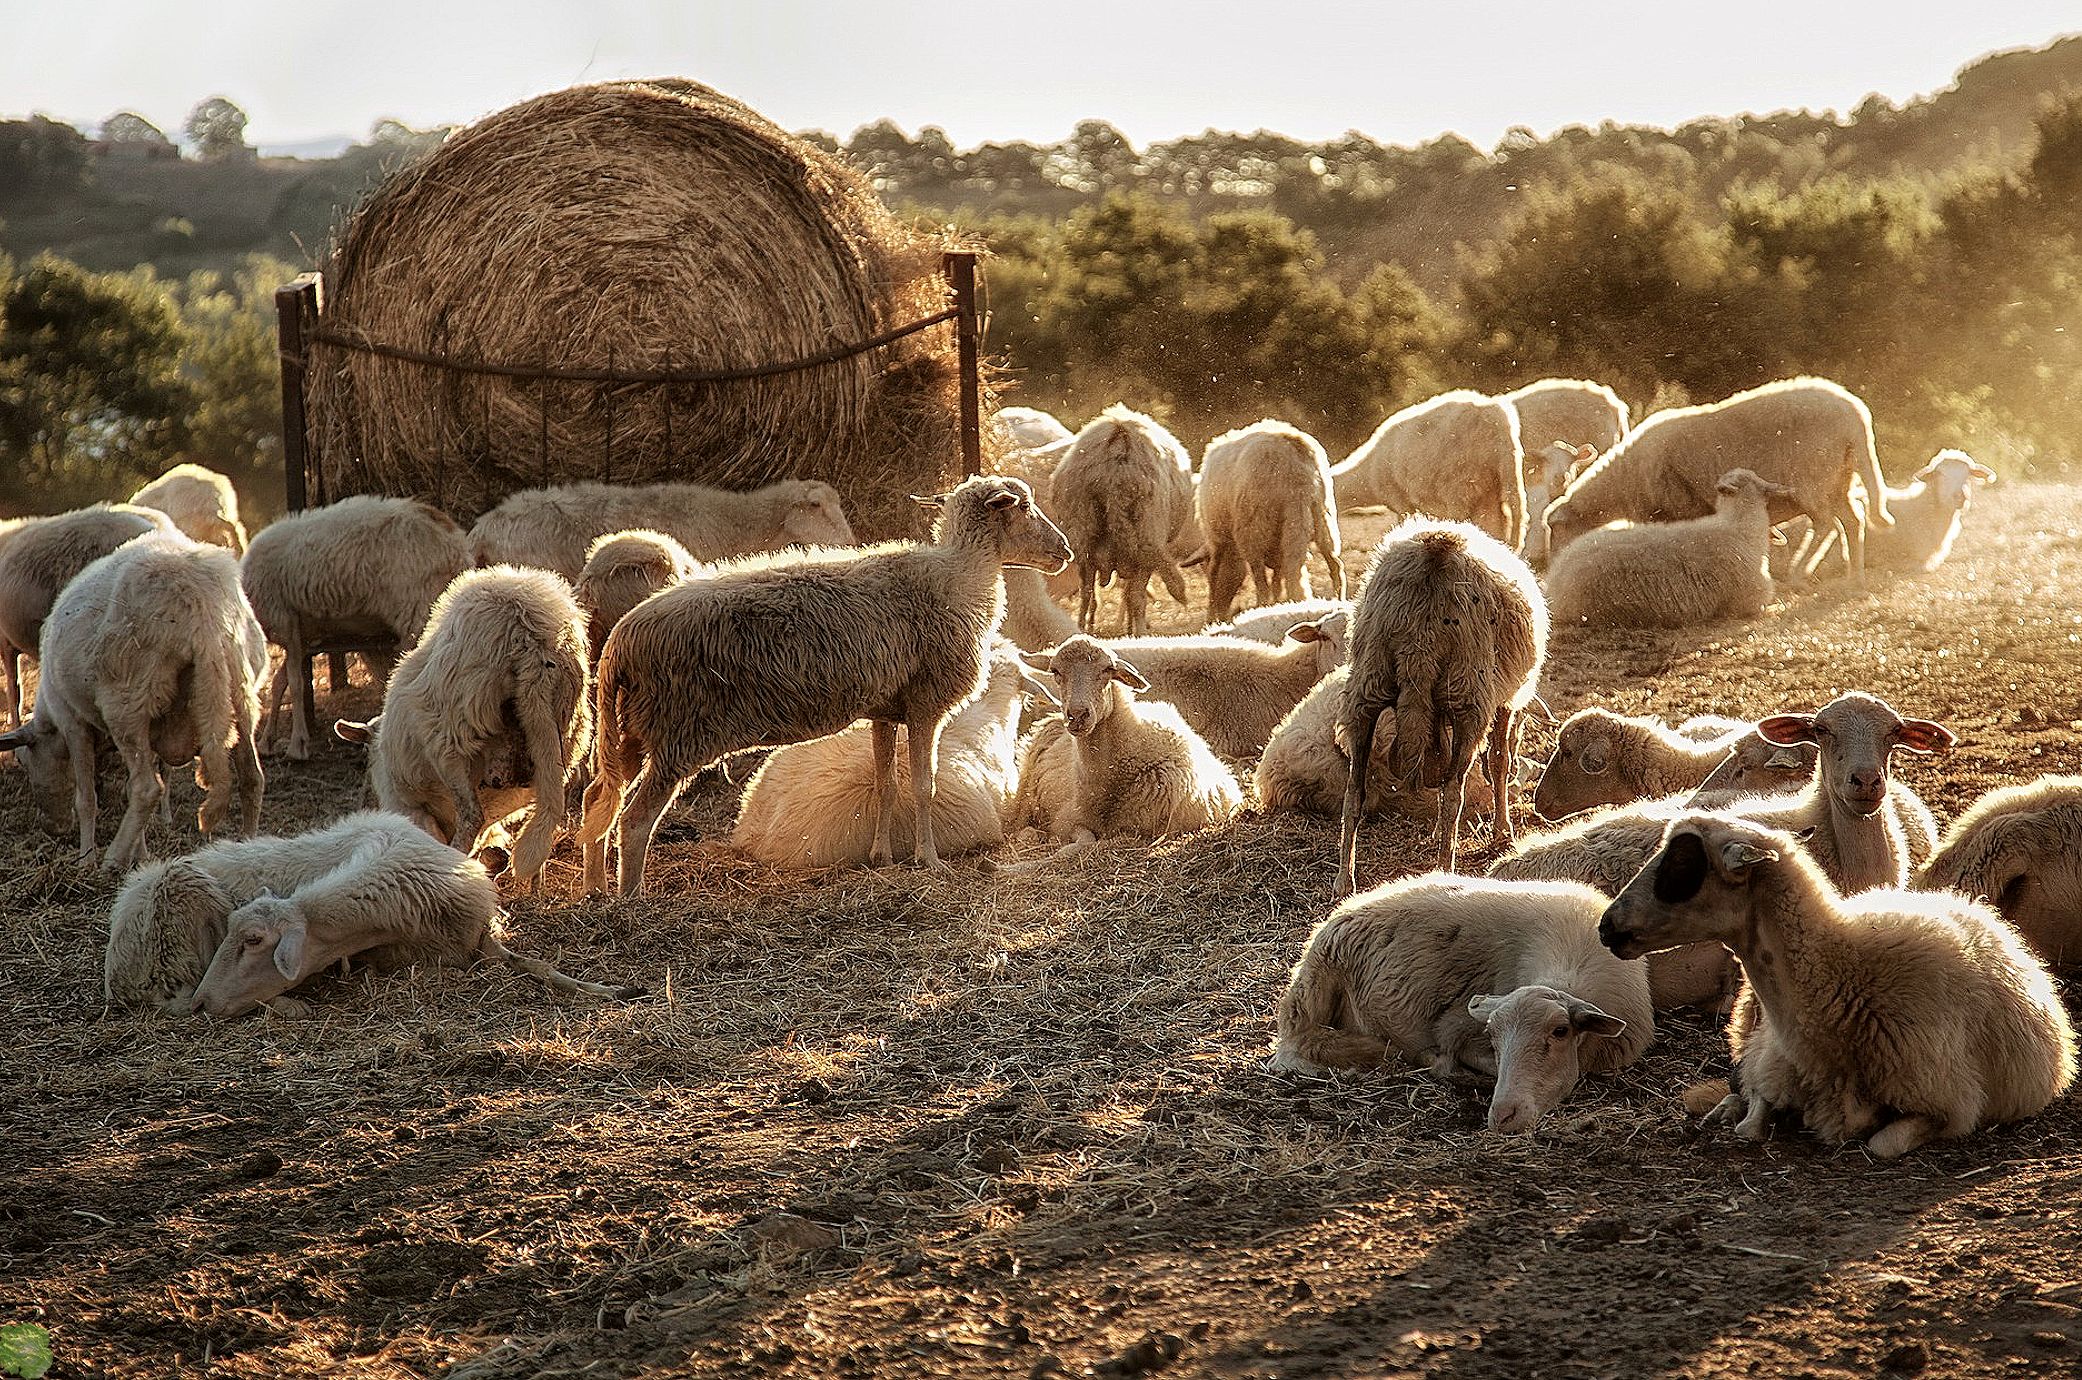 Овцеводство как бизнес для начинающего фермера